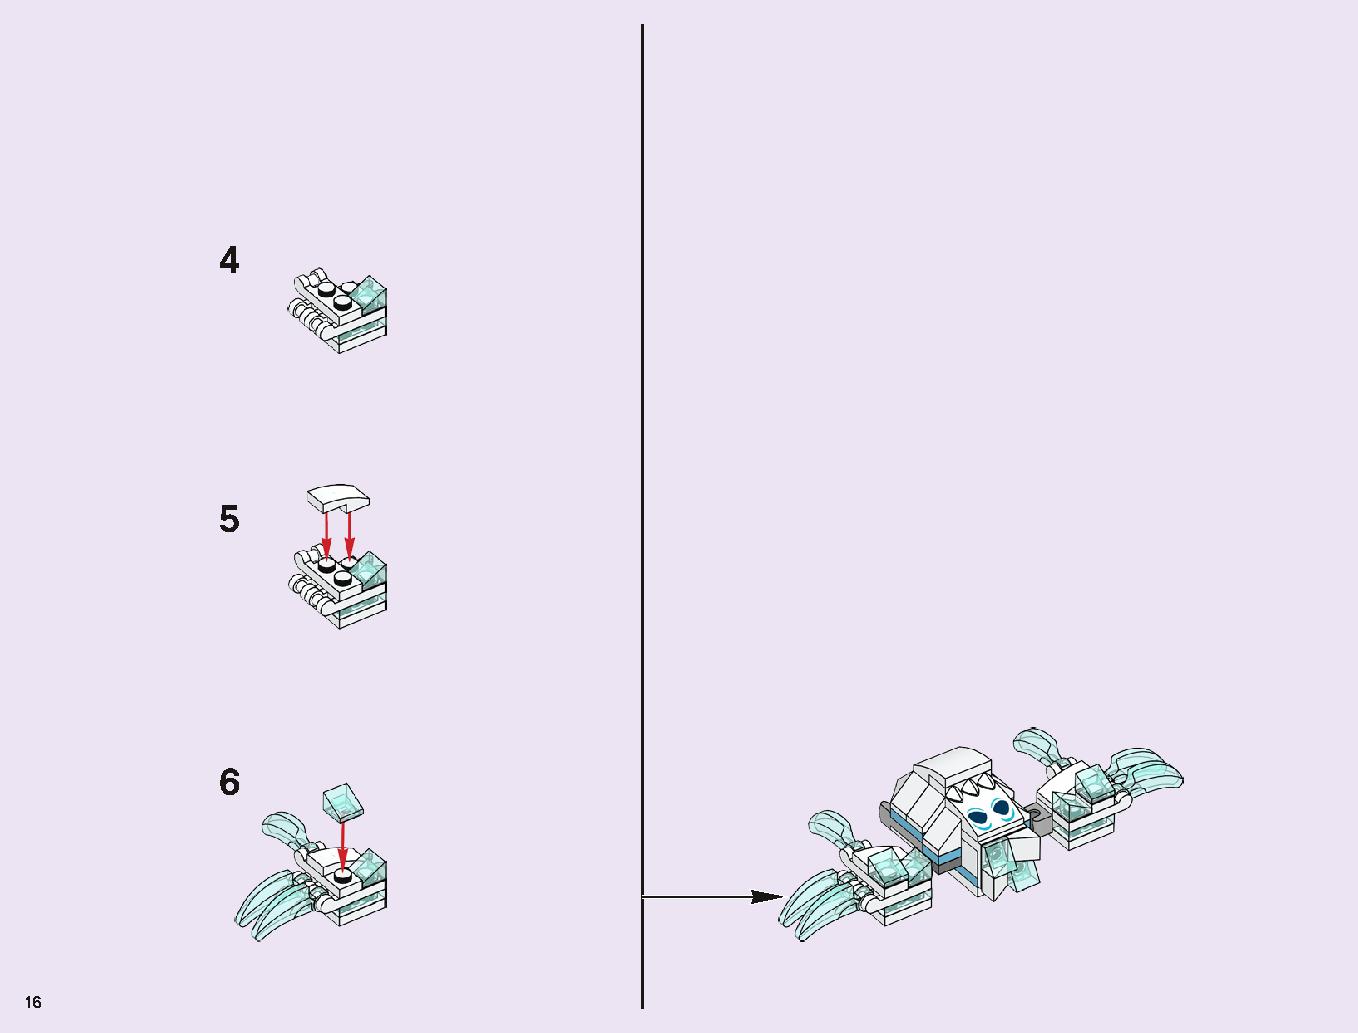 アナと雪の女王 “アイスキャッスル・ファンタジー” 43172 レゴの商品情報 レゴの説明書・組立方法 16 page